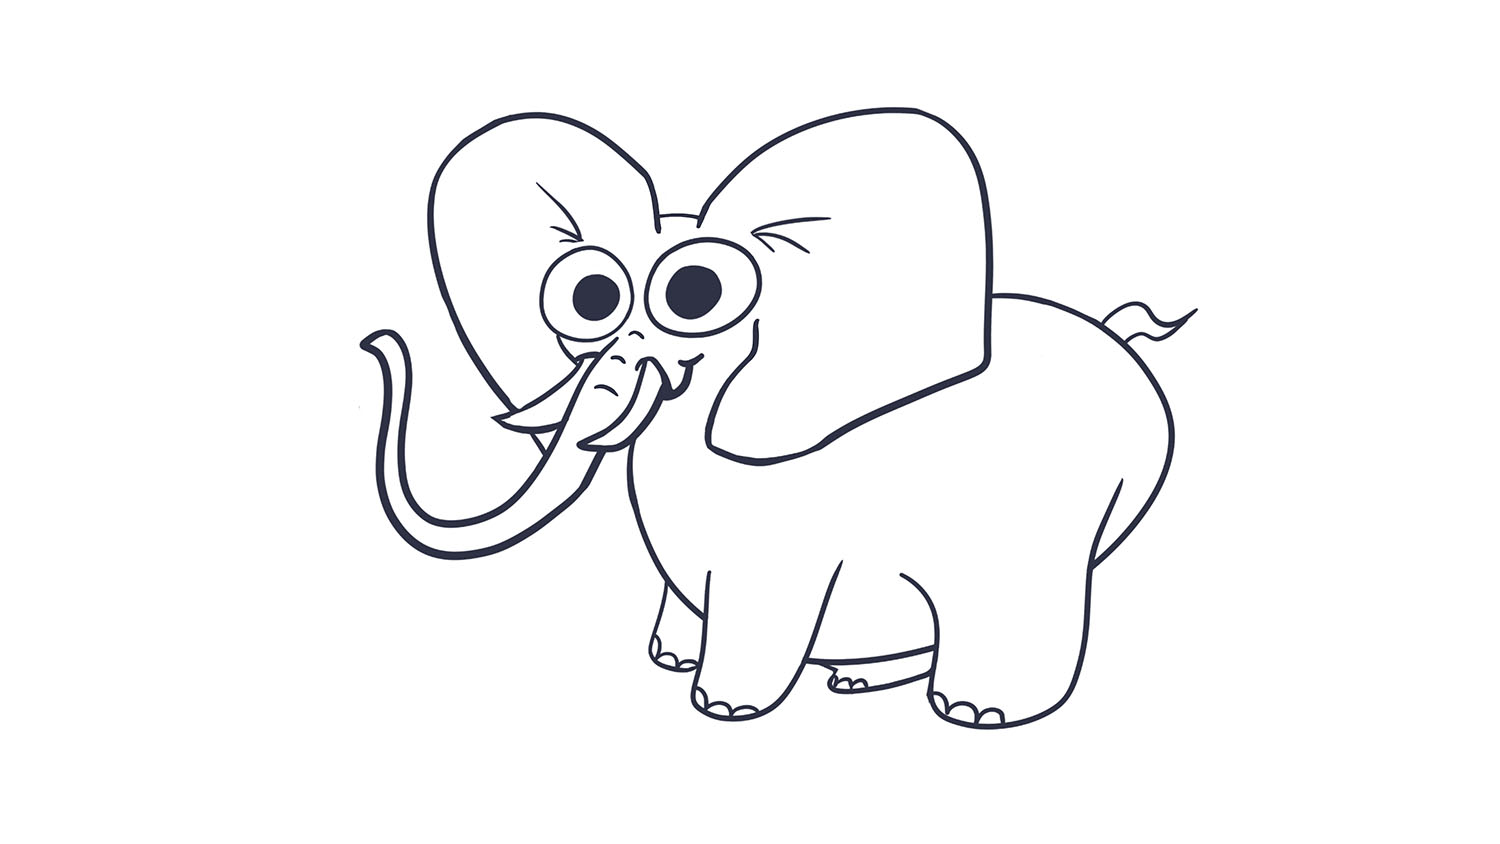 33. Elefante / Elephant. 103dibujos